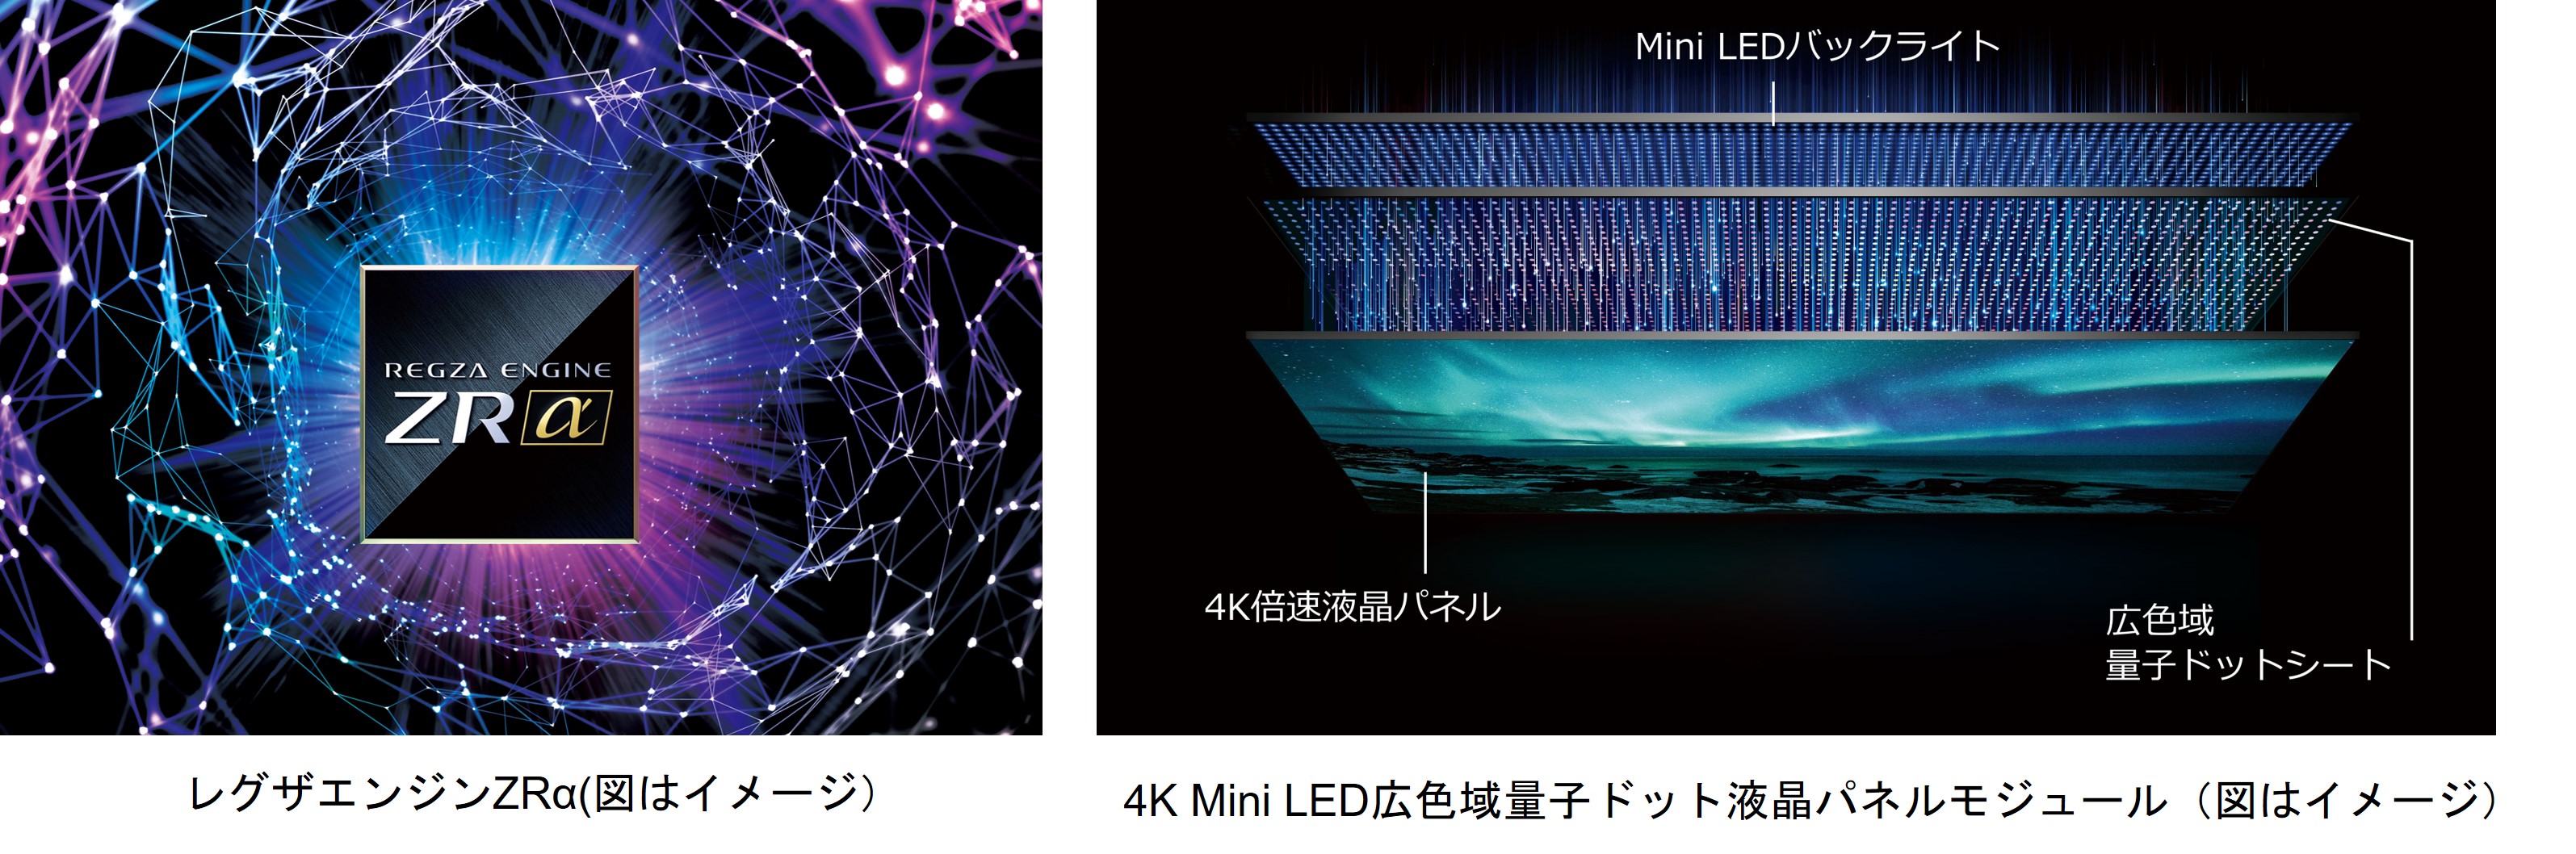 タイムシフトマシン4K Mini LED液晶レグザ「Z970Mシリーズ」発売